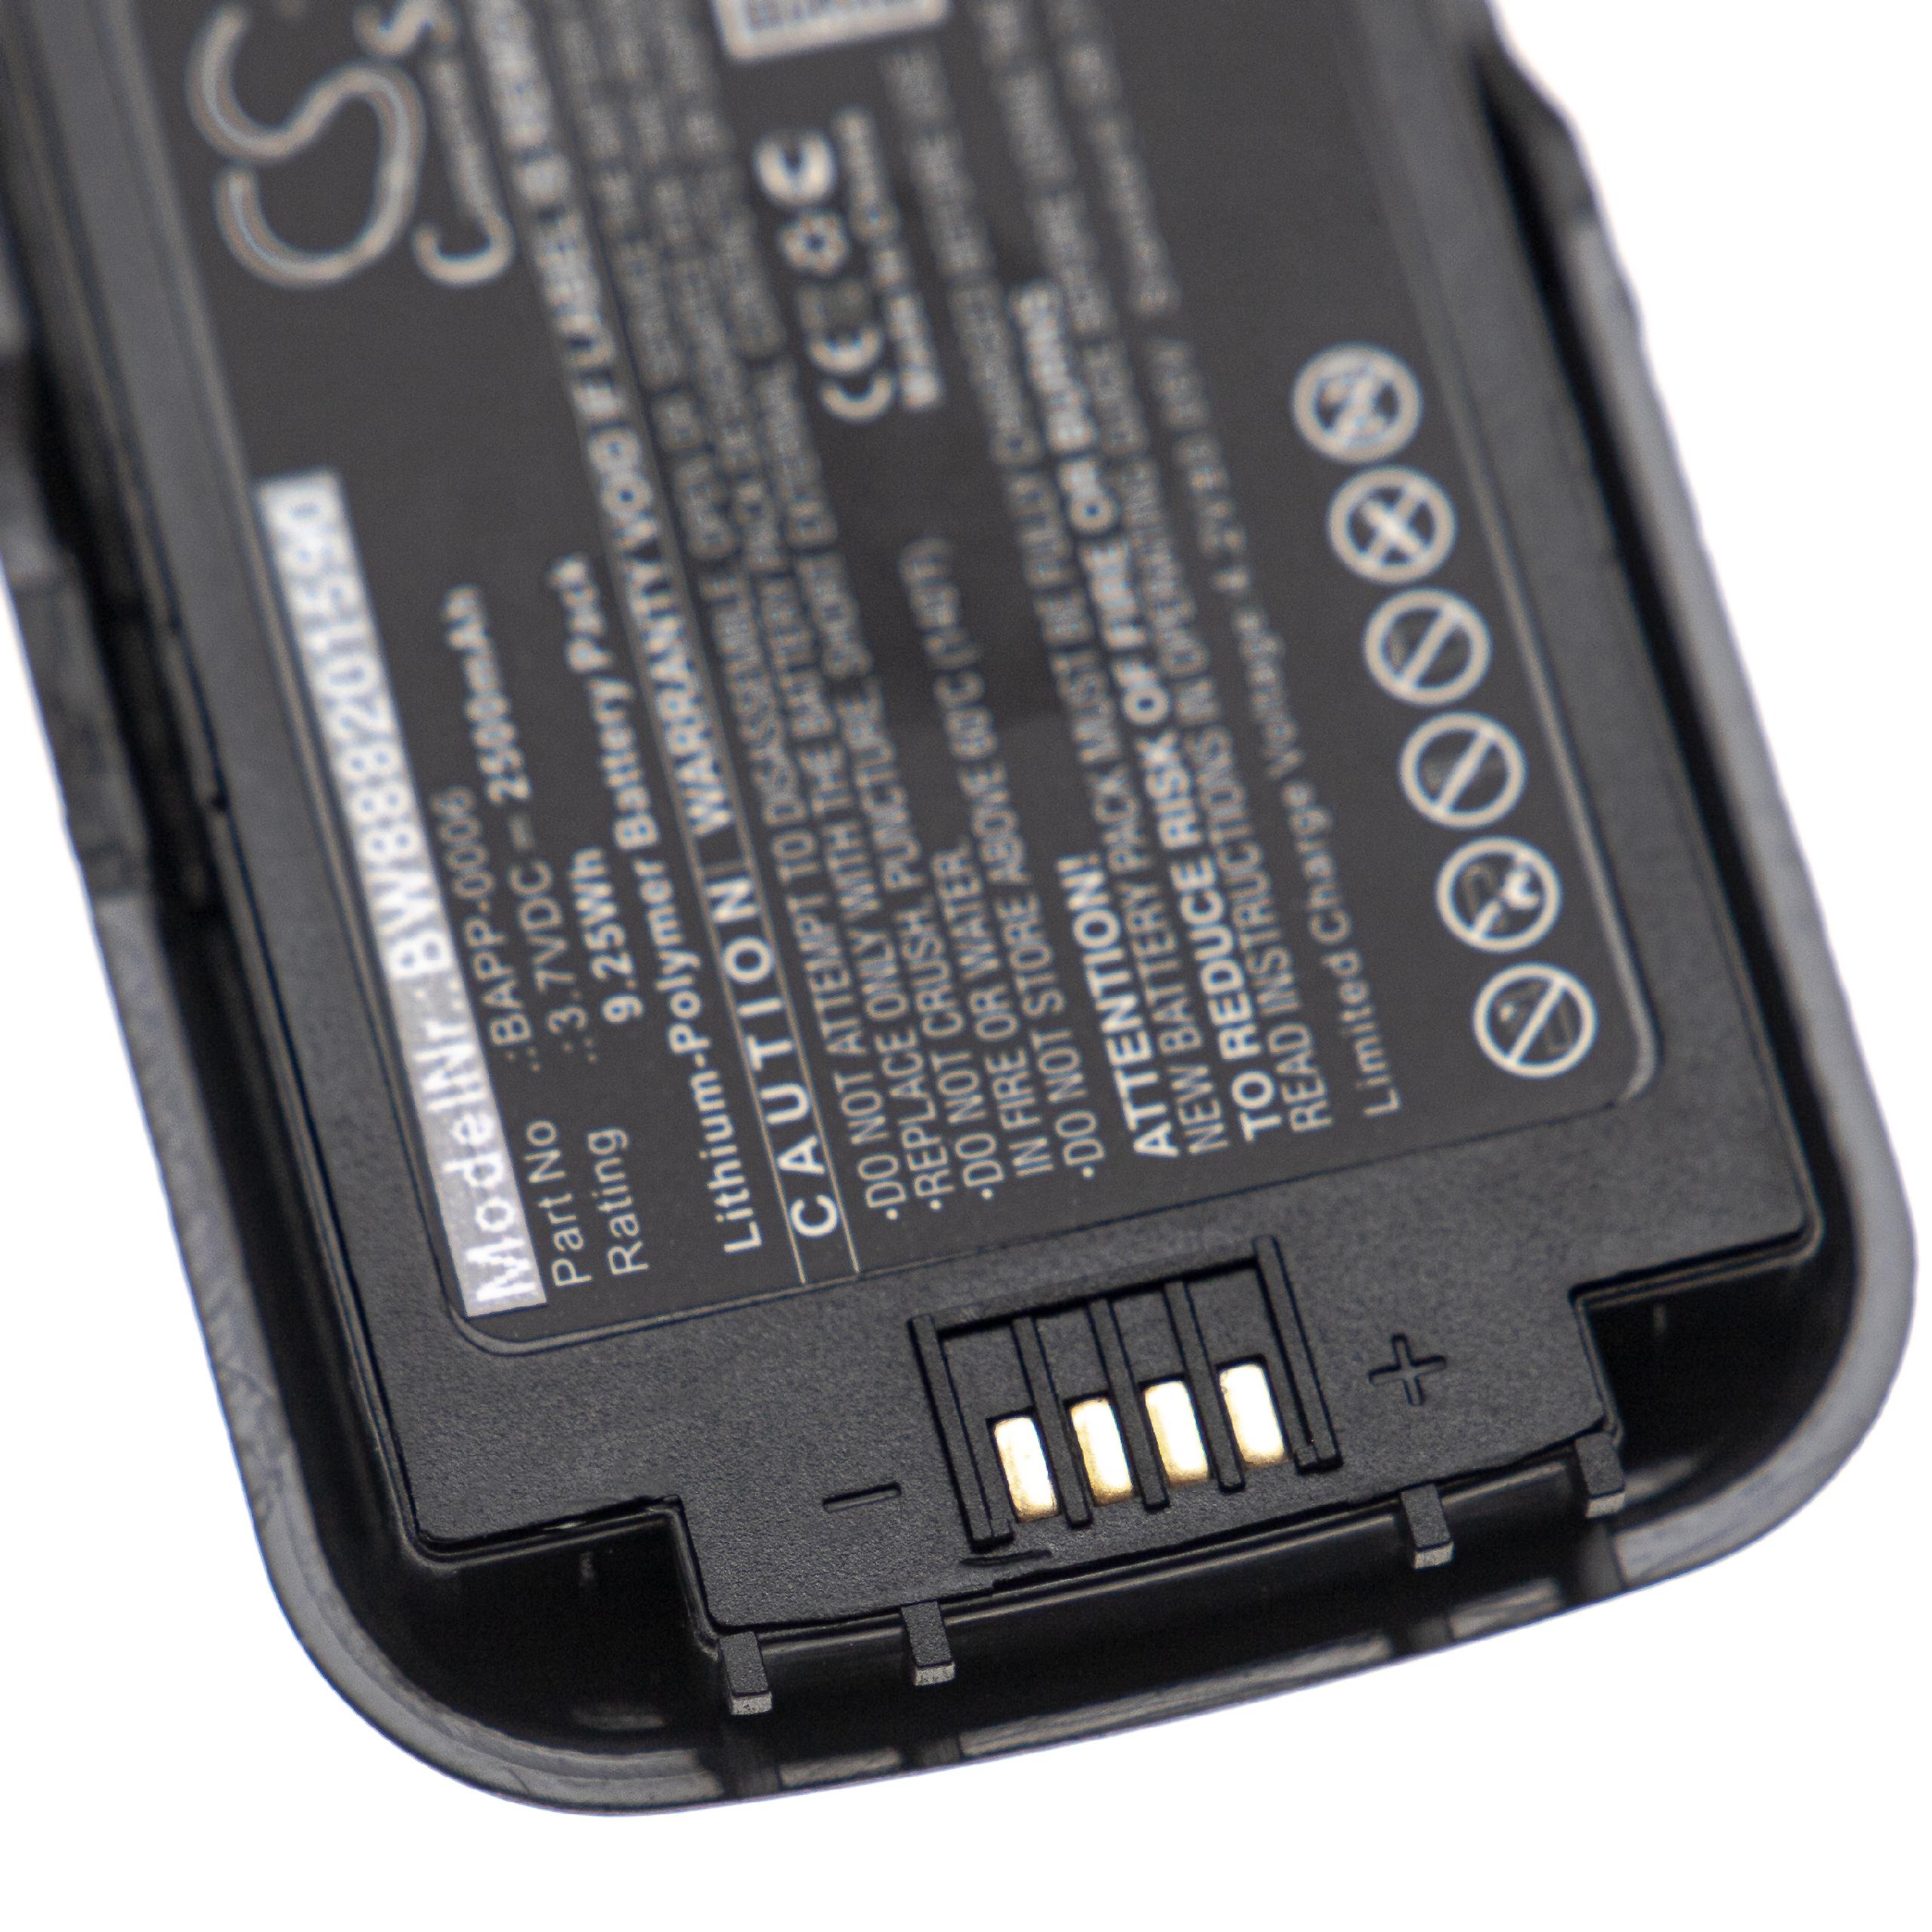 Batería reemplaza HumanWare BAPP-0006 para reproductor MP3 HumanWare - 2500 mAh 7,4 V Li-poli